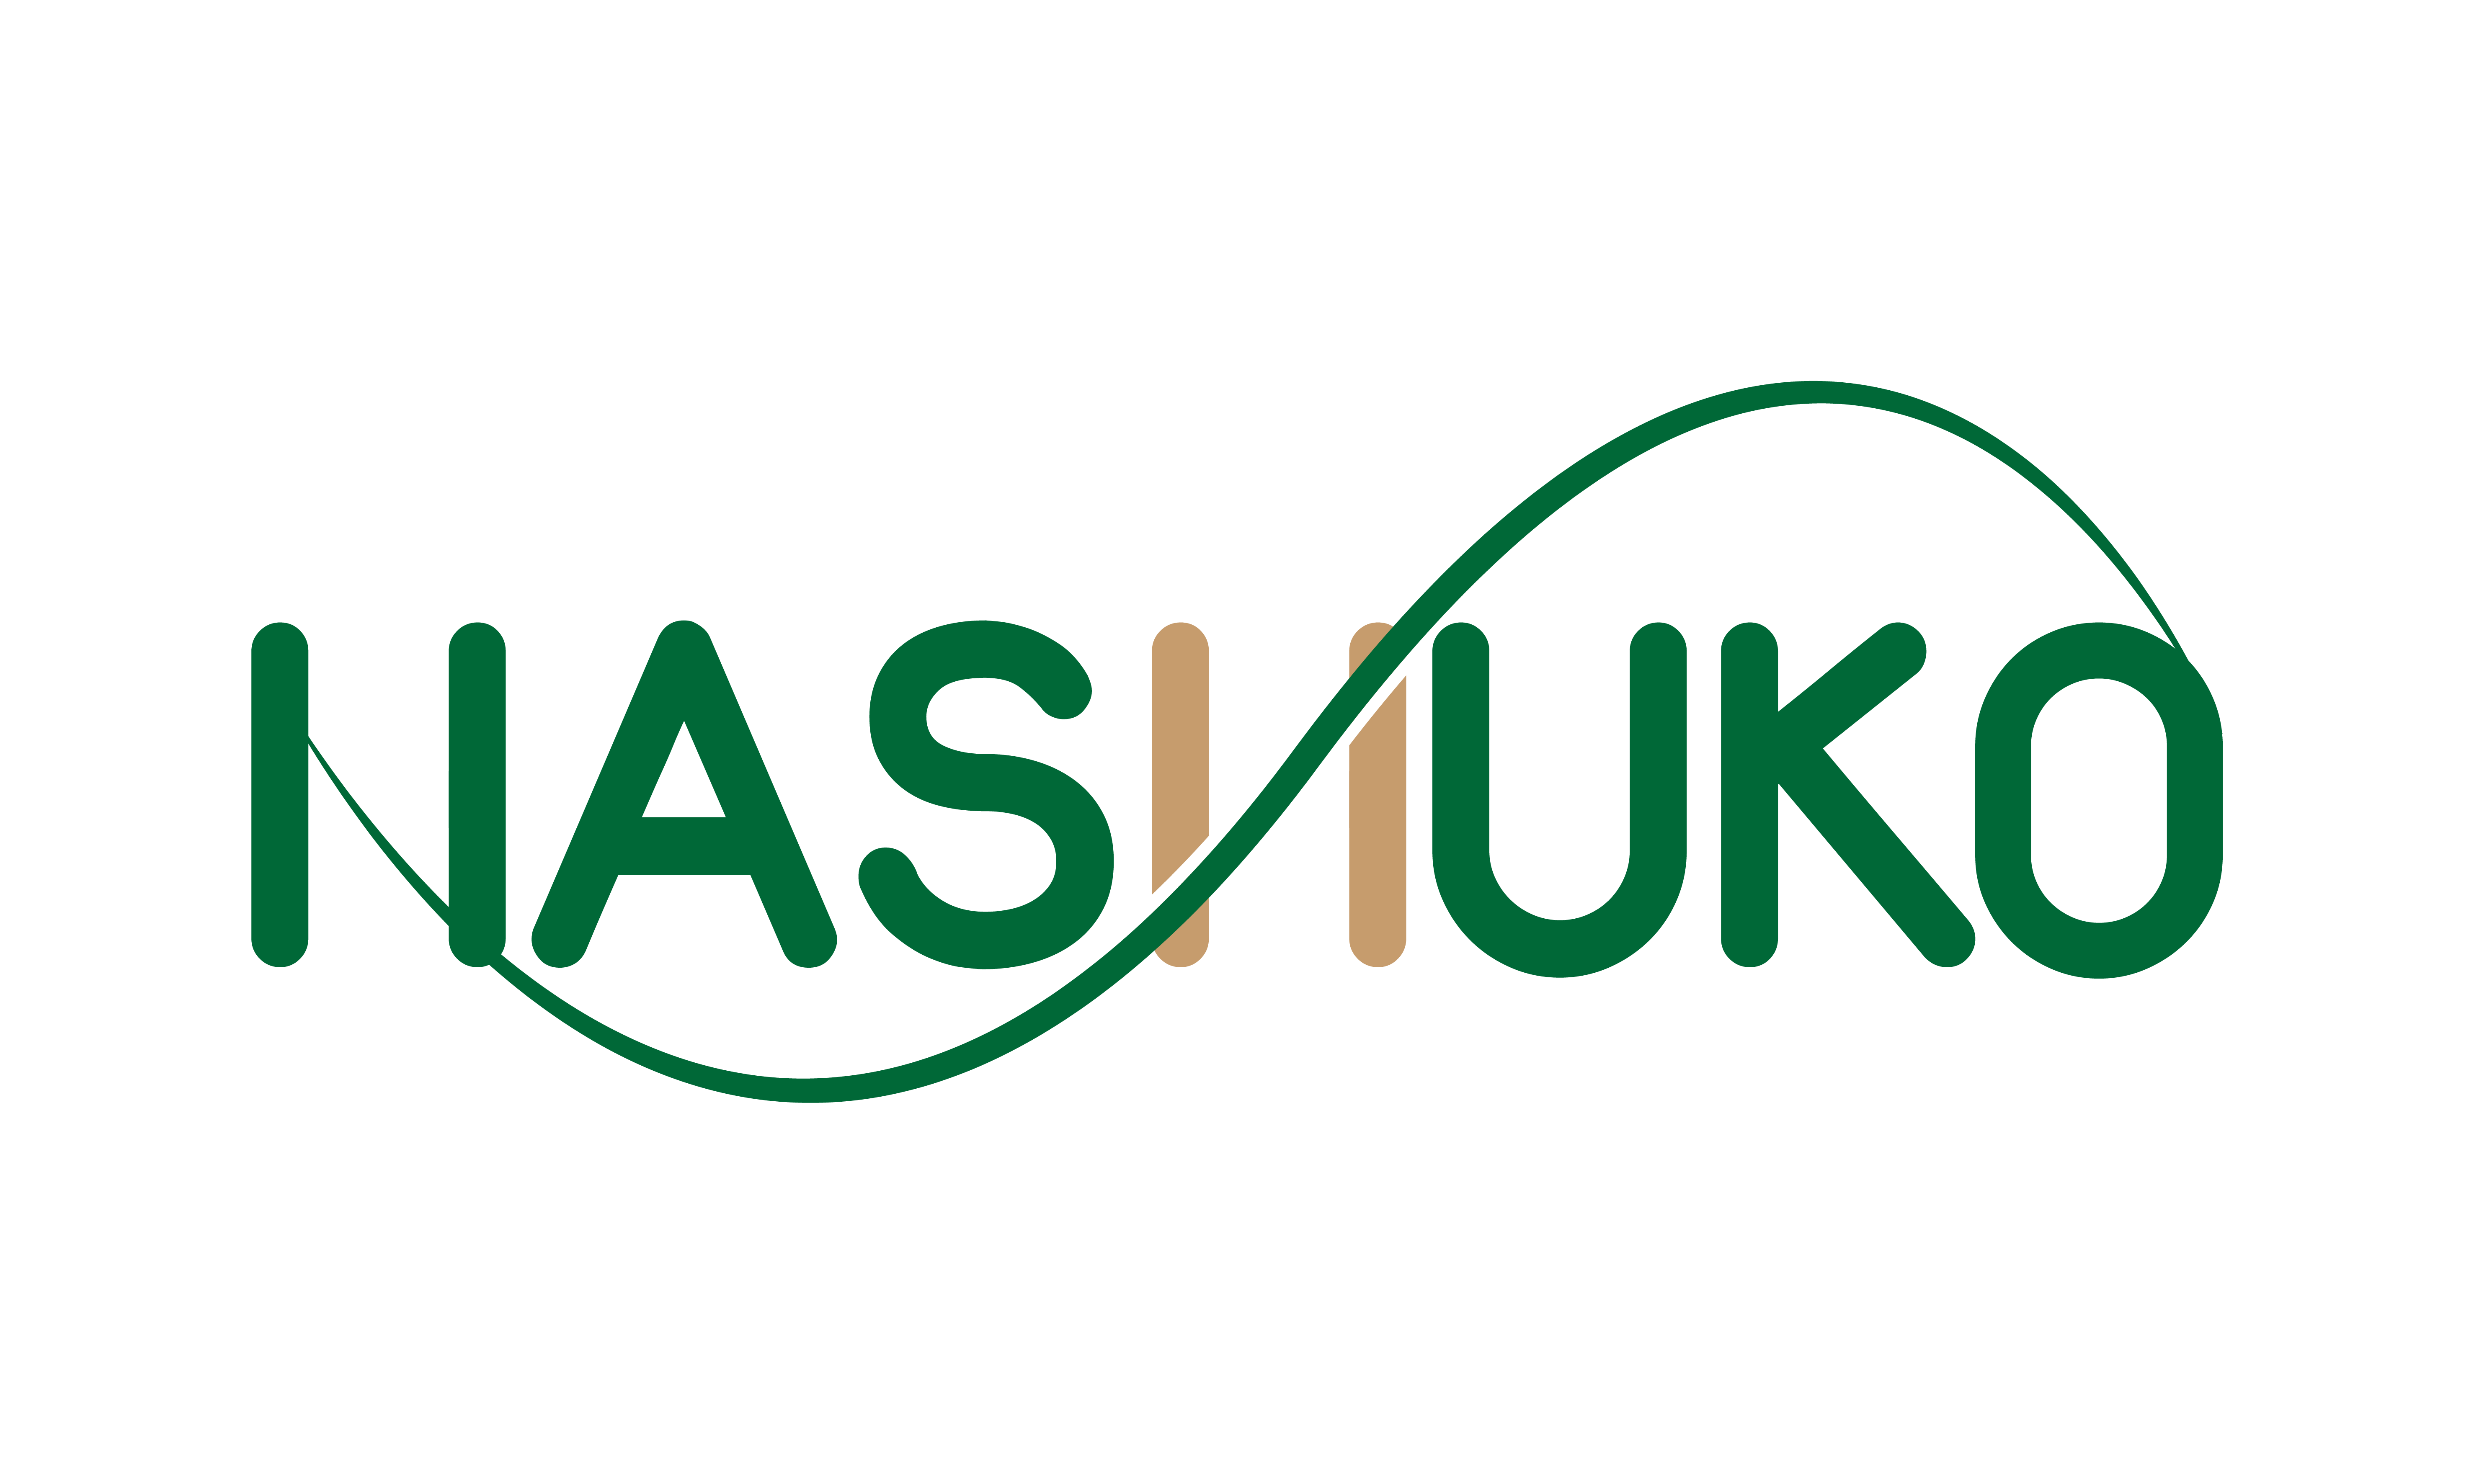 NASHUKO